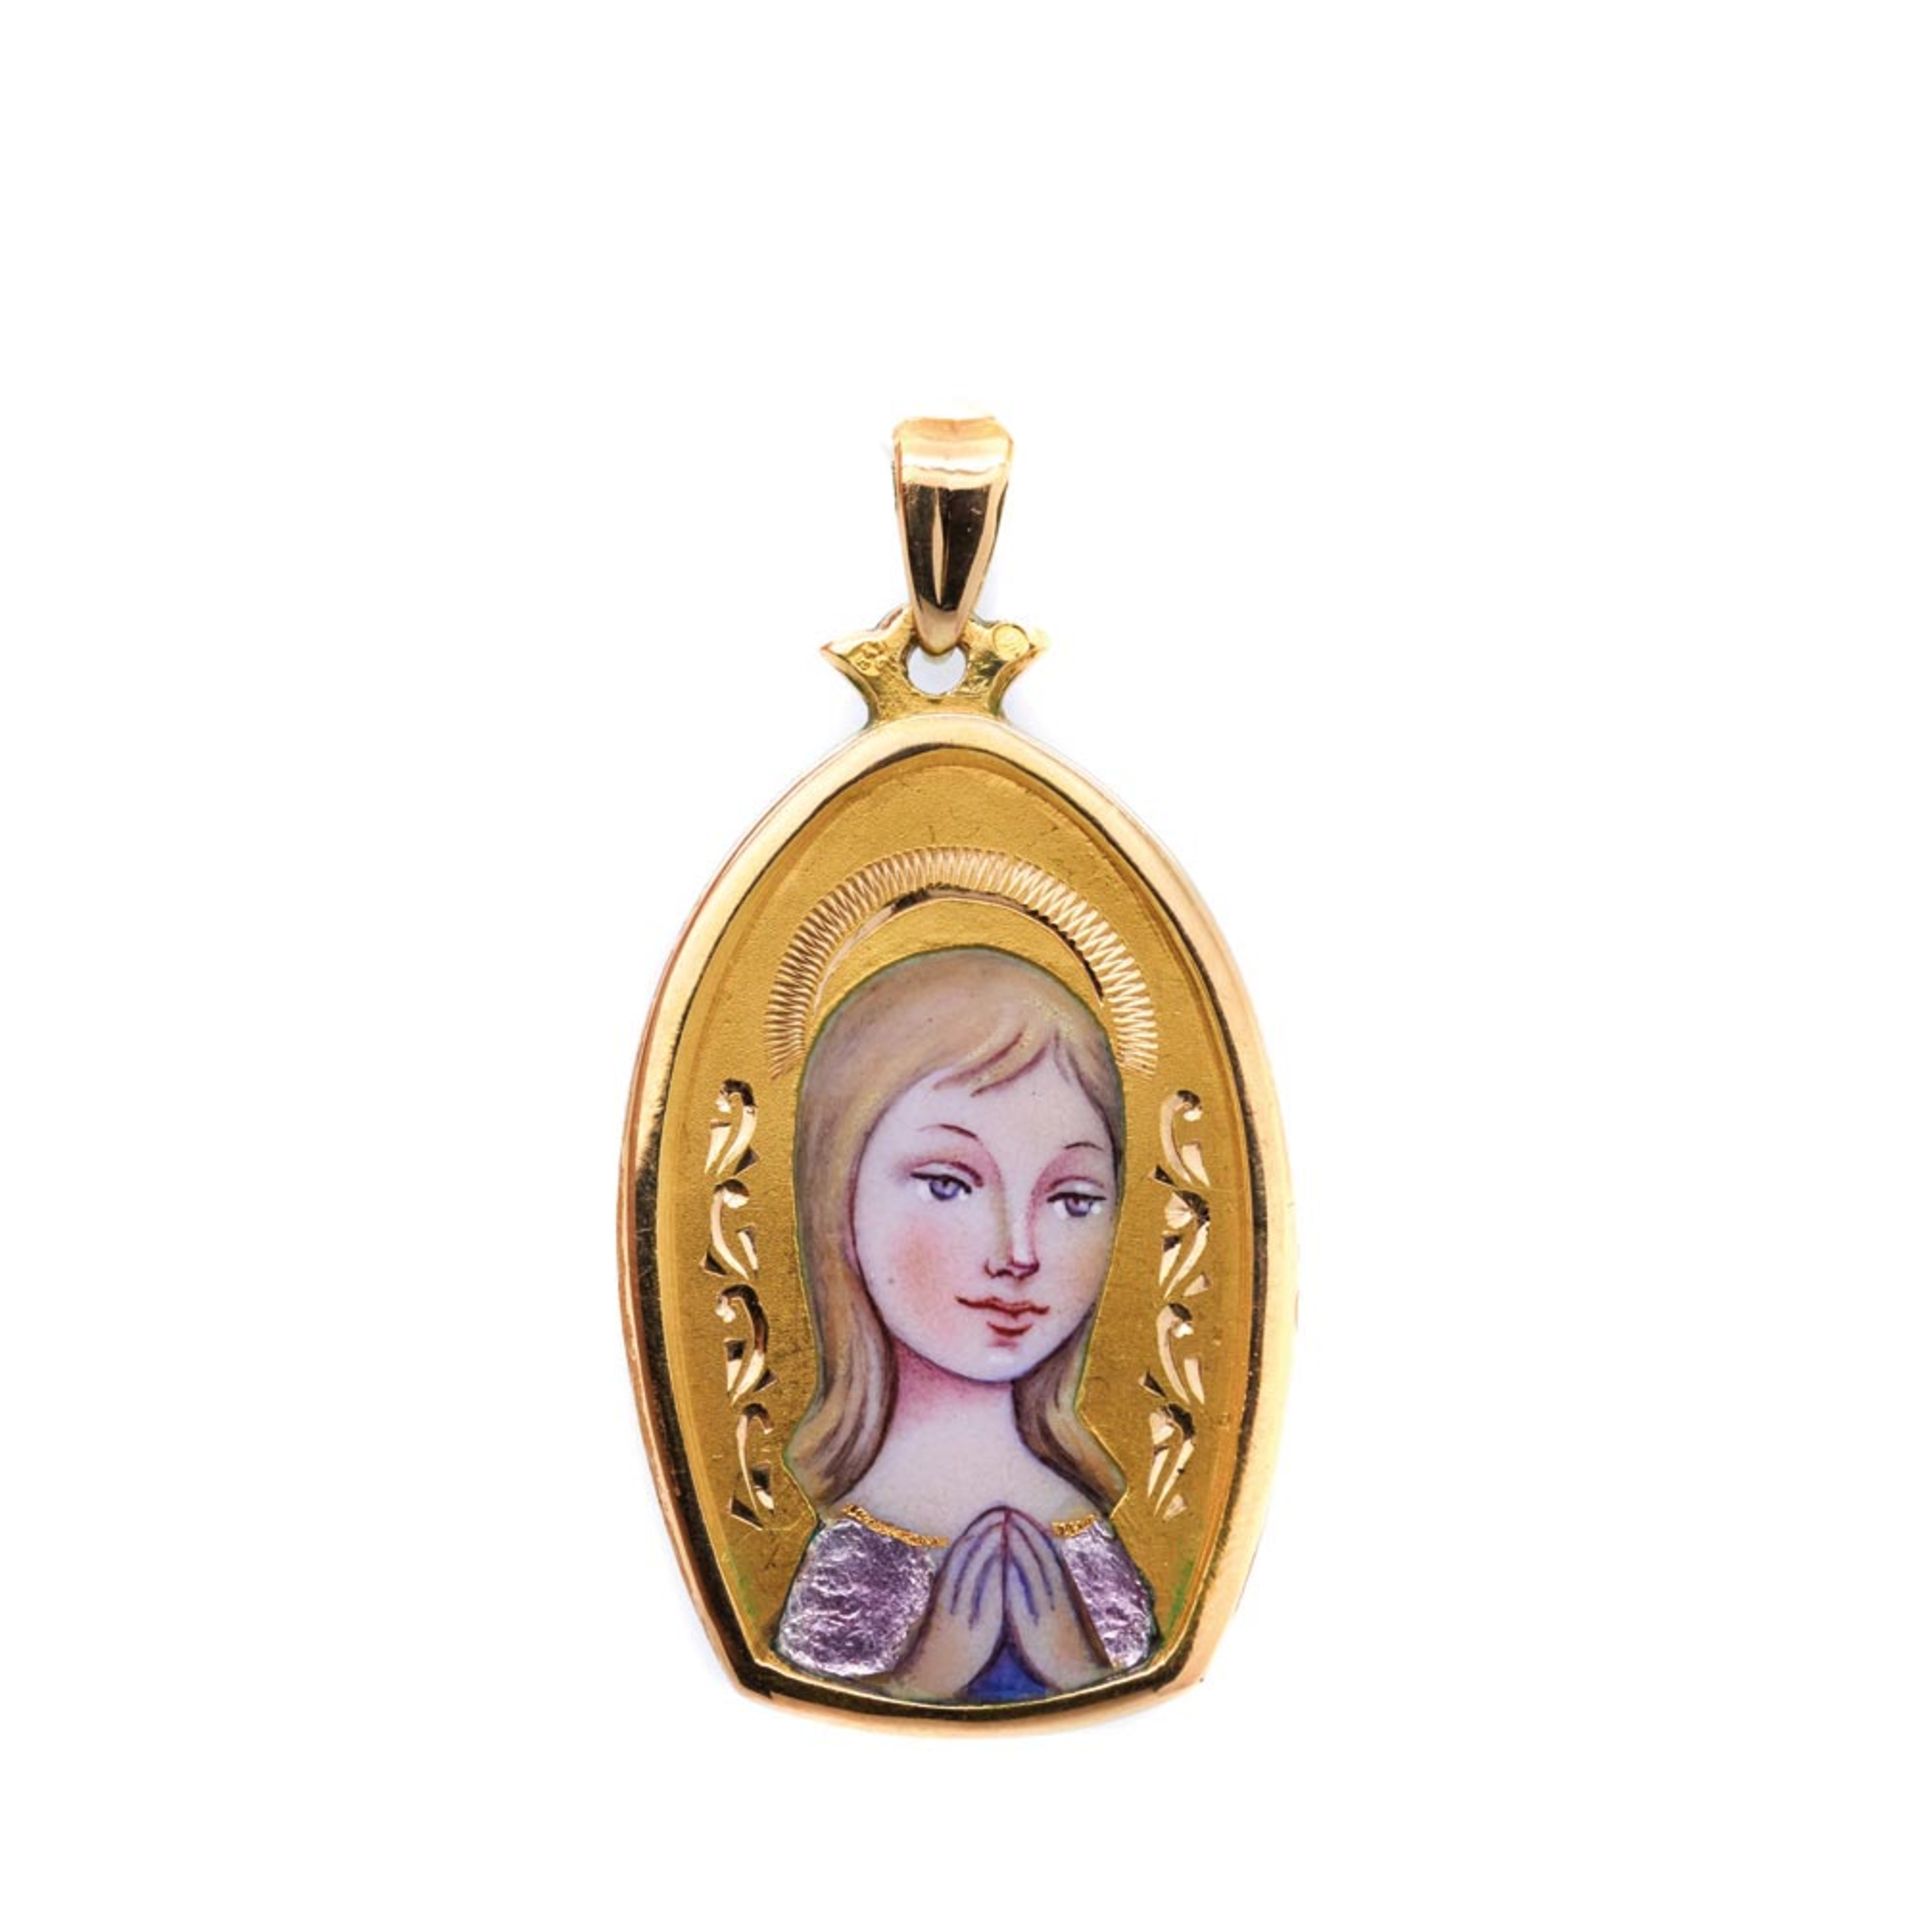 Gold and enamel Virgin medallion